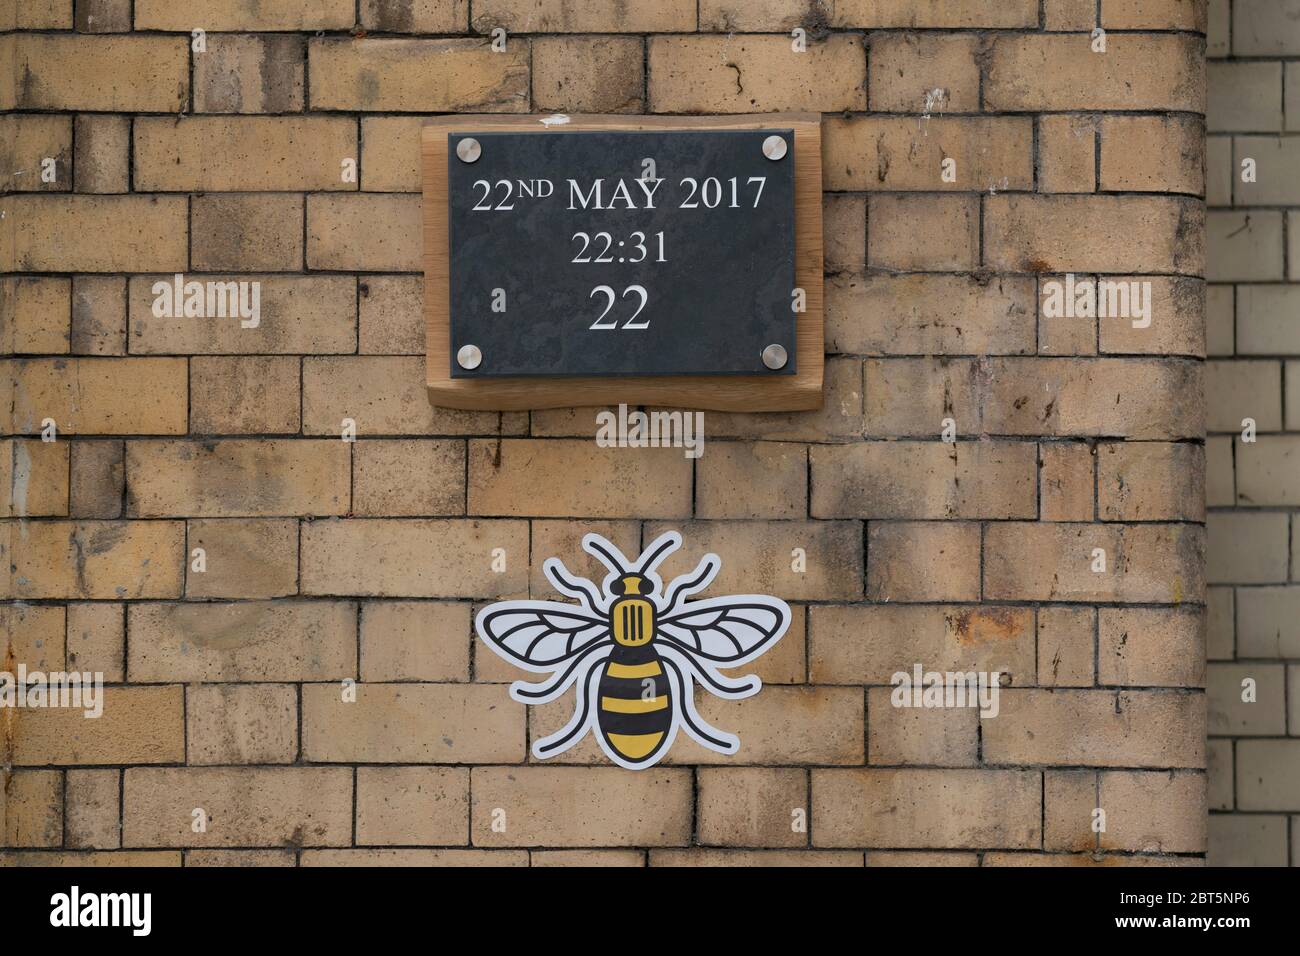 Manchester, Mai 22. Mai 2017. Eine Hommage ist zu sehen, die Erinnerung an den Angriff in der Manchester Arena in Manchester, Großbritannien, 22. Mai 2020. Manchester am Freitag war der dritte Jahrestag des Terroranschlags, bei dem 22 Menschen getötet und Hunderte verletzt wurden. Der Angriff geschah, als Salman Abedi am Ende eines Konzerts der US-Popsängerin Ariana Grande am 22. Mai 2017 eine Bombe zündete. Kredit: Jon Super/Xinhua/Alamy Live News Stockfoto